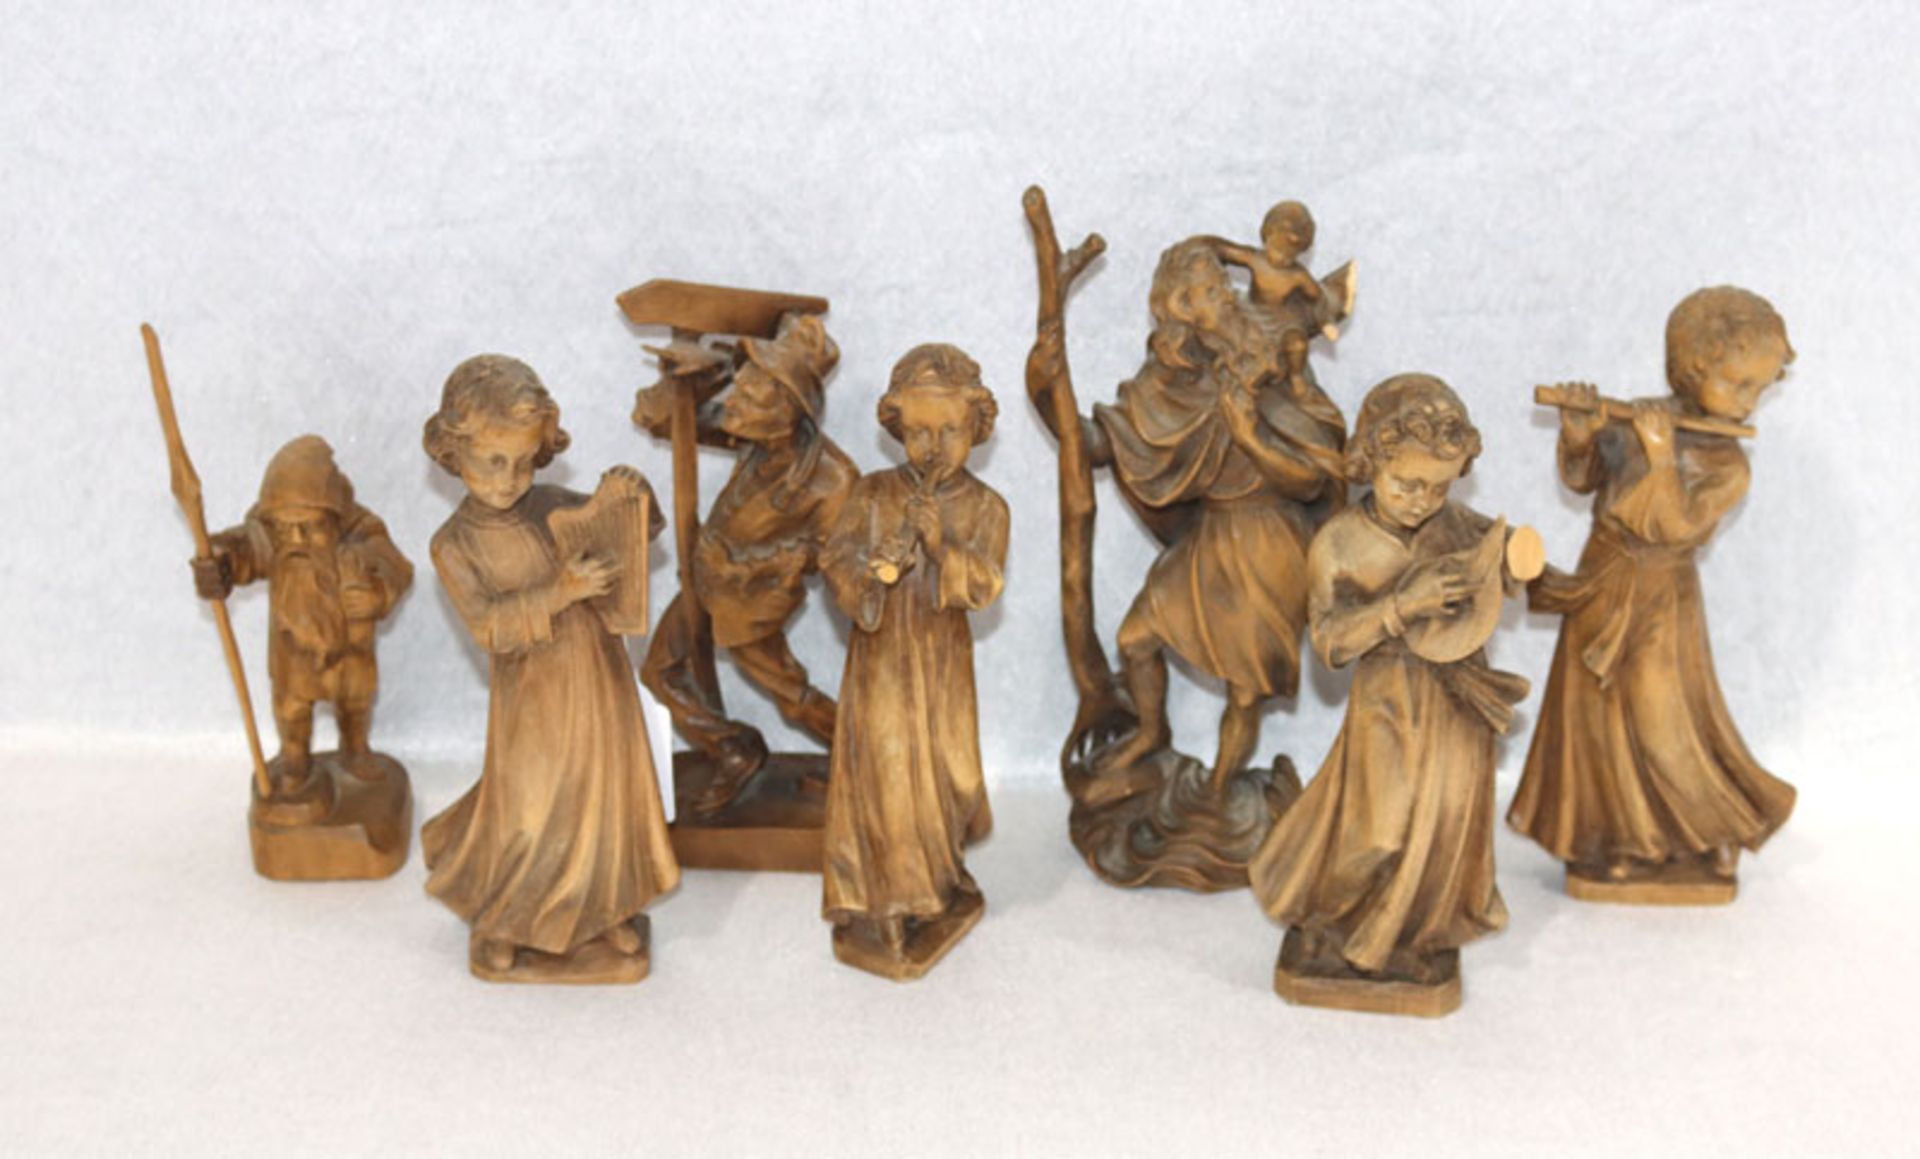 7 Holzfiguren: 4 'Musizierende Engel', 'Heiliger Christophorus', 'Zwerg' und 'Wanderer', alle dunkel